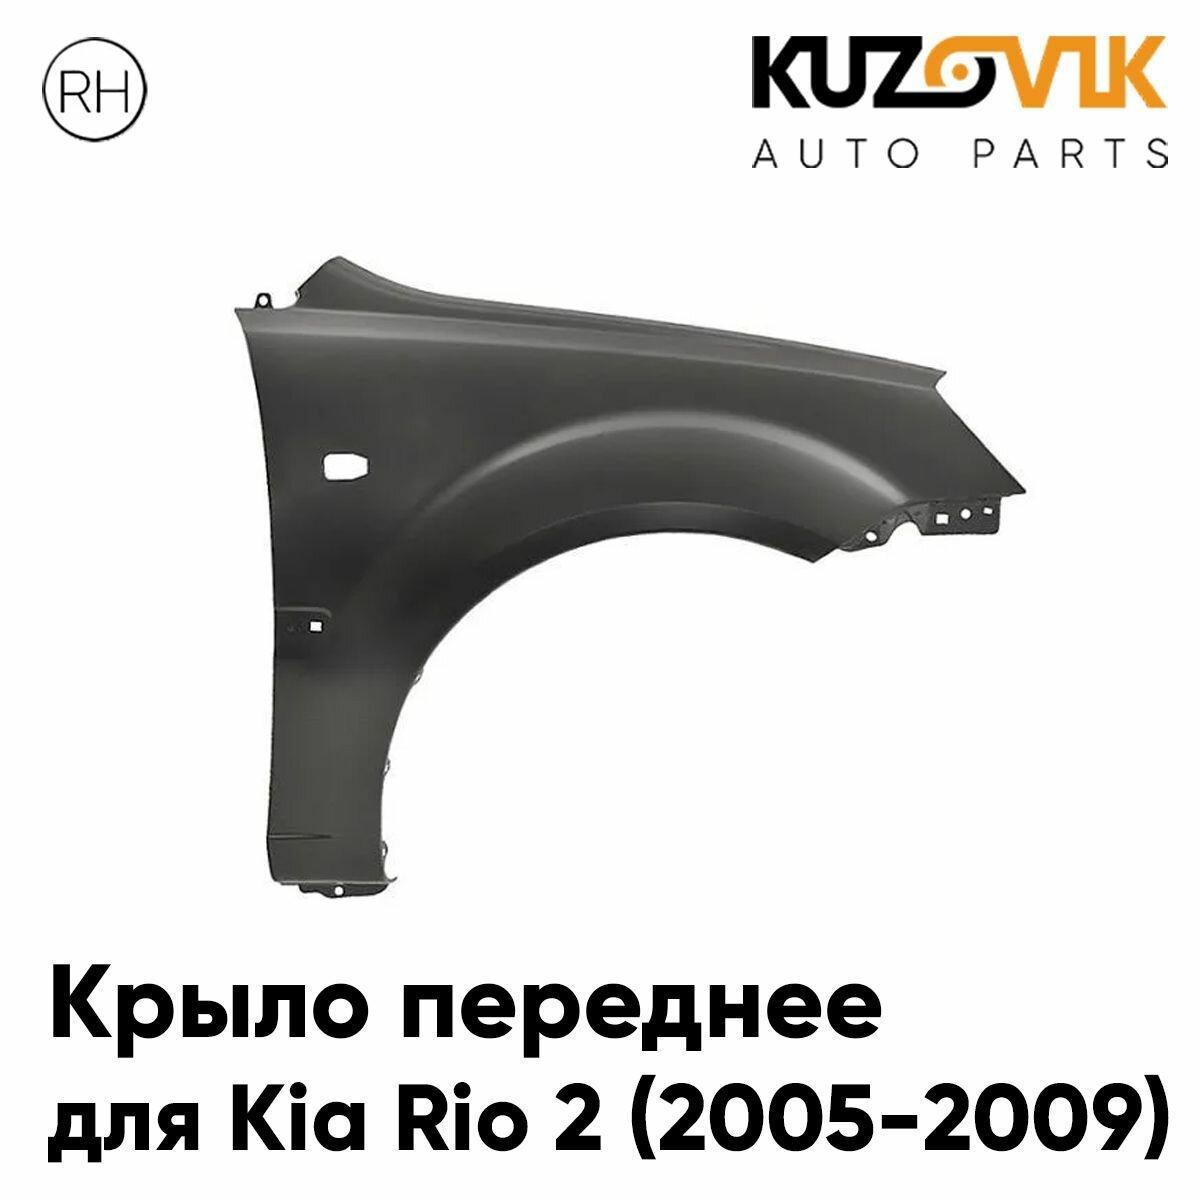 Крыло переднее правое для Киа Рио Kia Rio 2 (2005-2009) с отверстием под повторитель